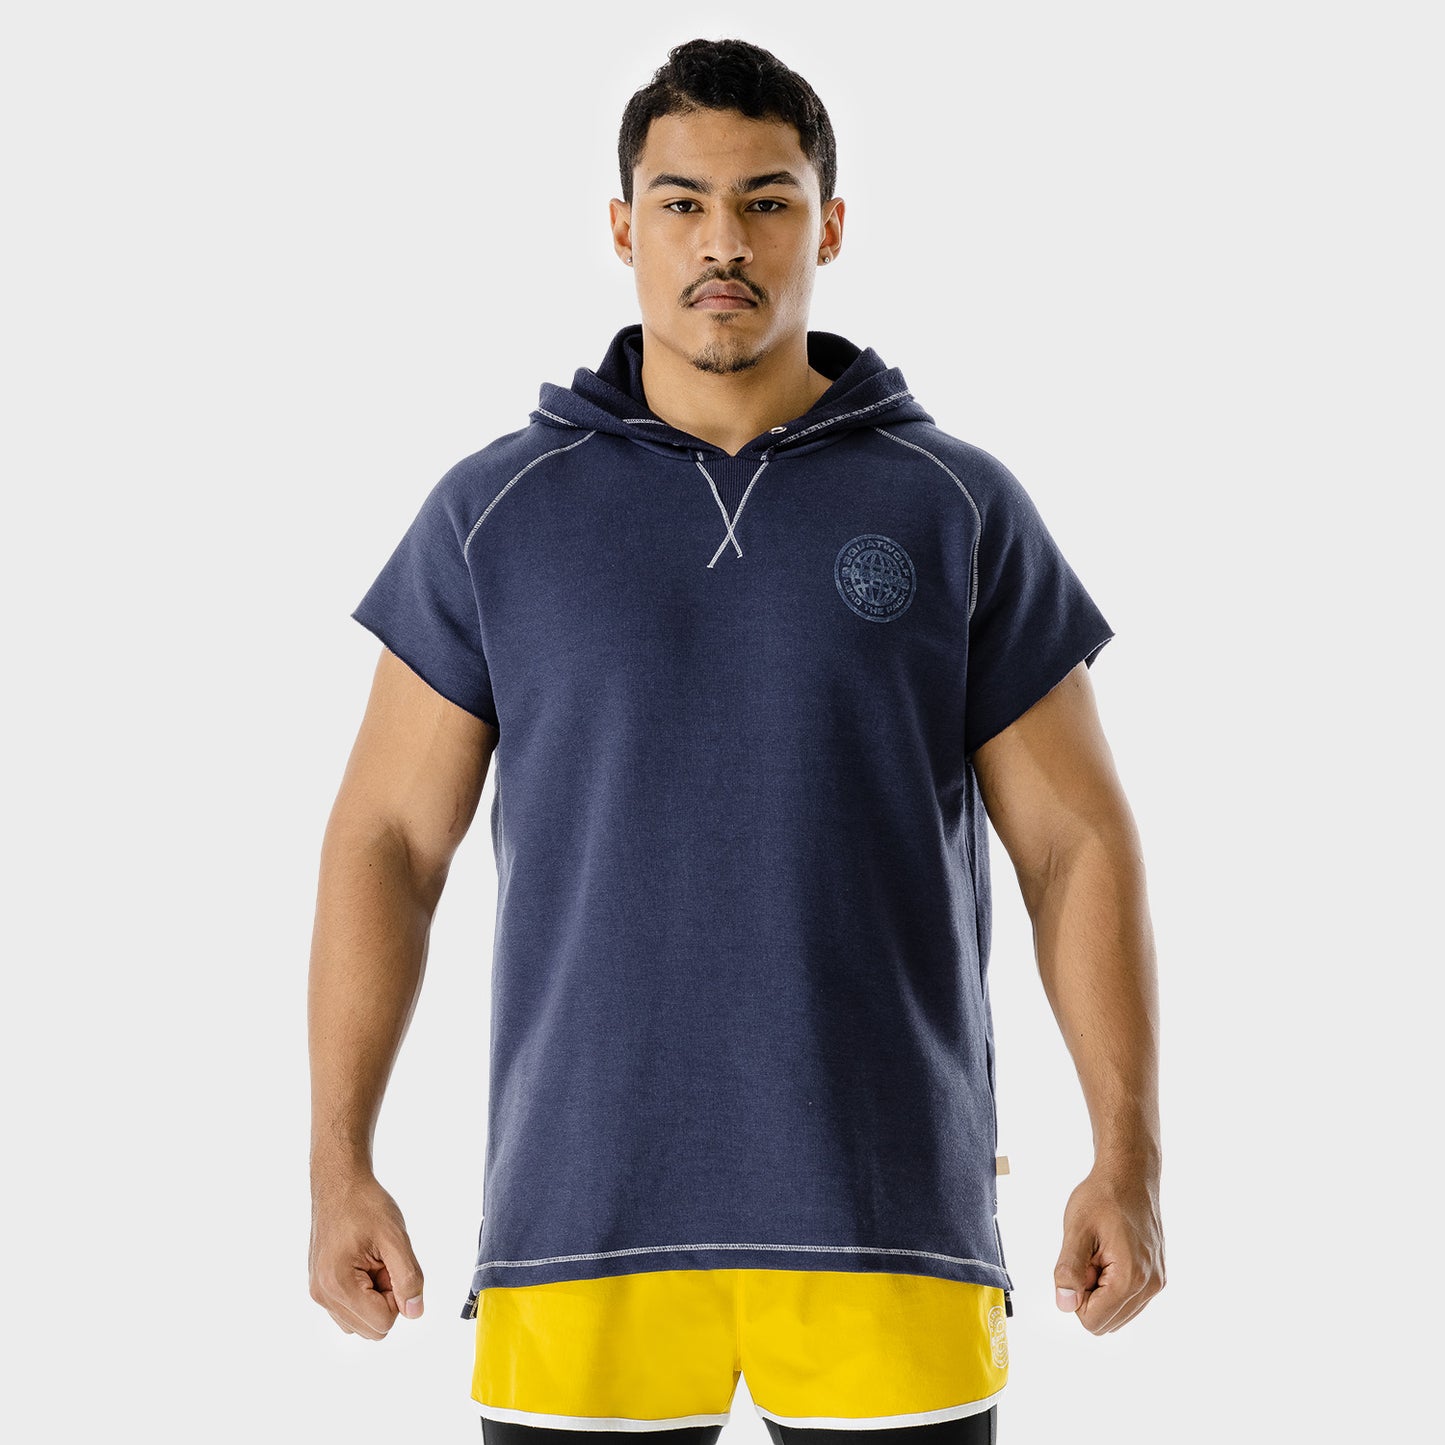 squatwolf-gym-wear-golden-era-sleeveless-hoodie-blue-workout-hoodies-for-men